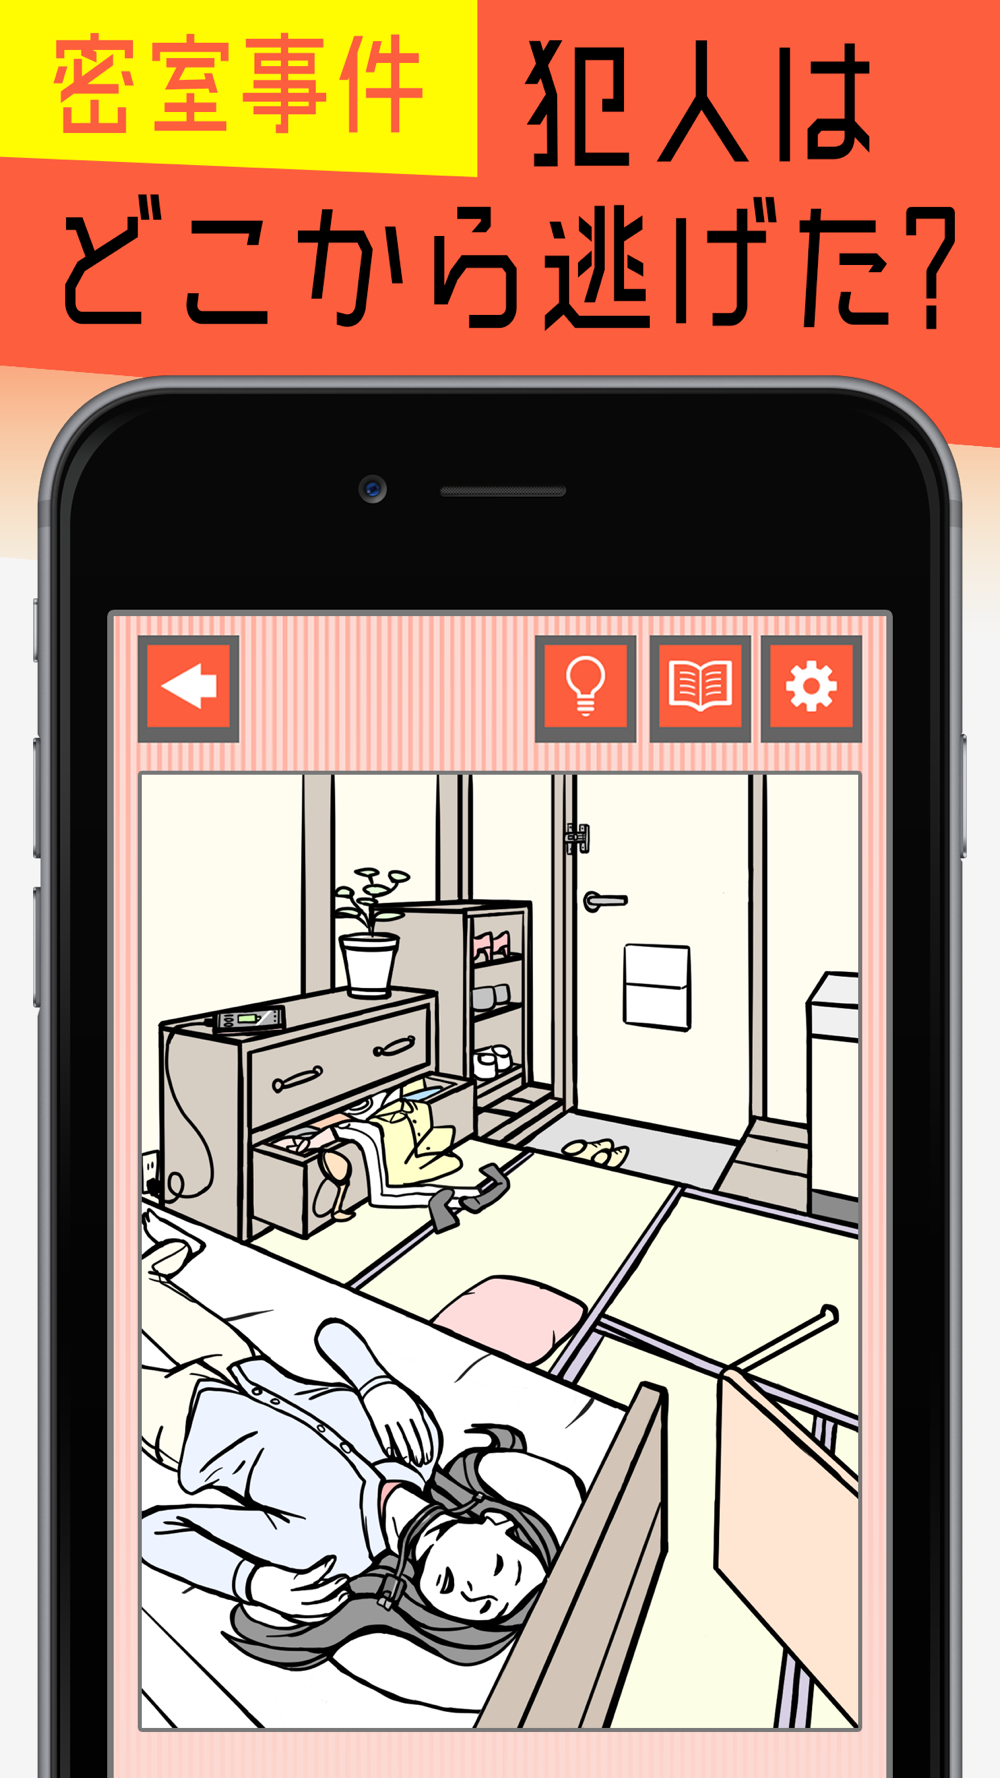 ナゾトキの時間 謎解きで推理力を試す面白いゲーム Free Download App For Iphone Steprimo Com